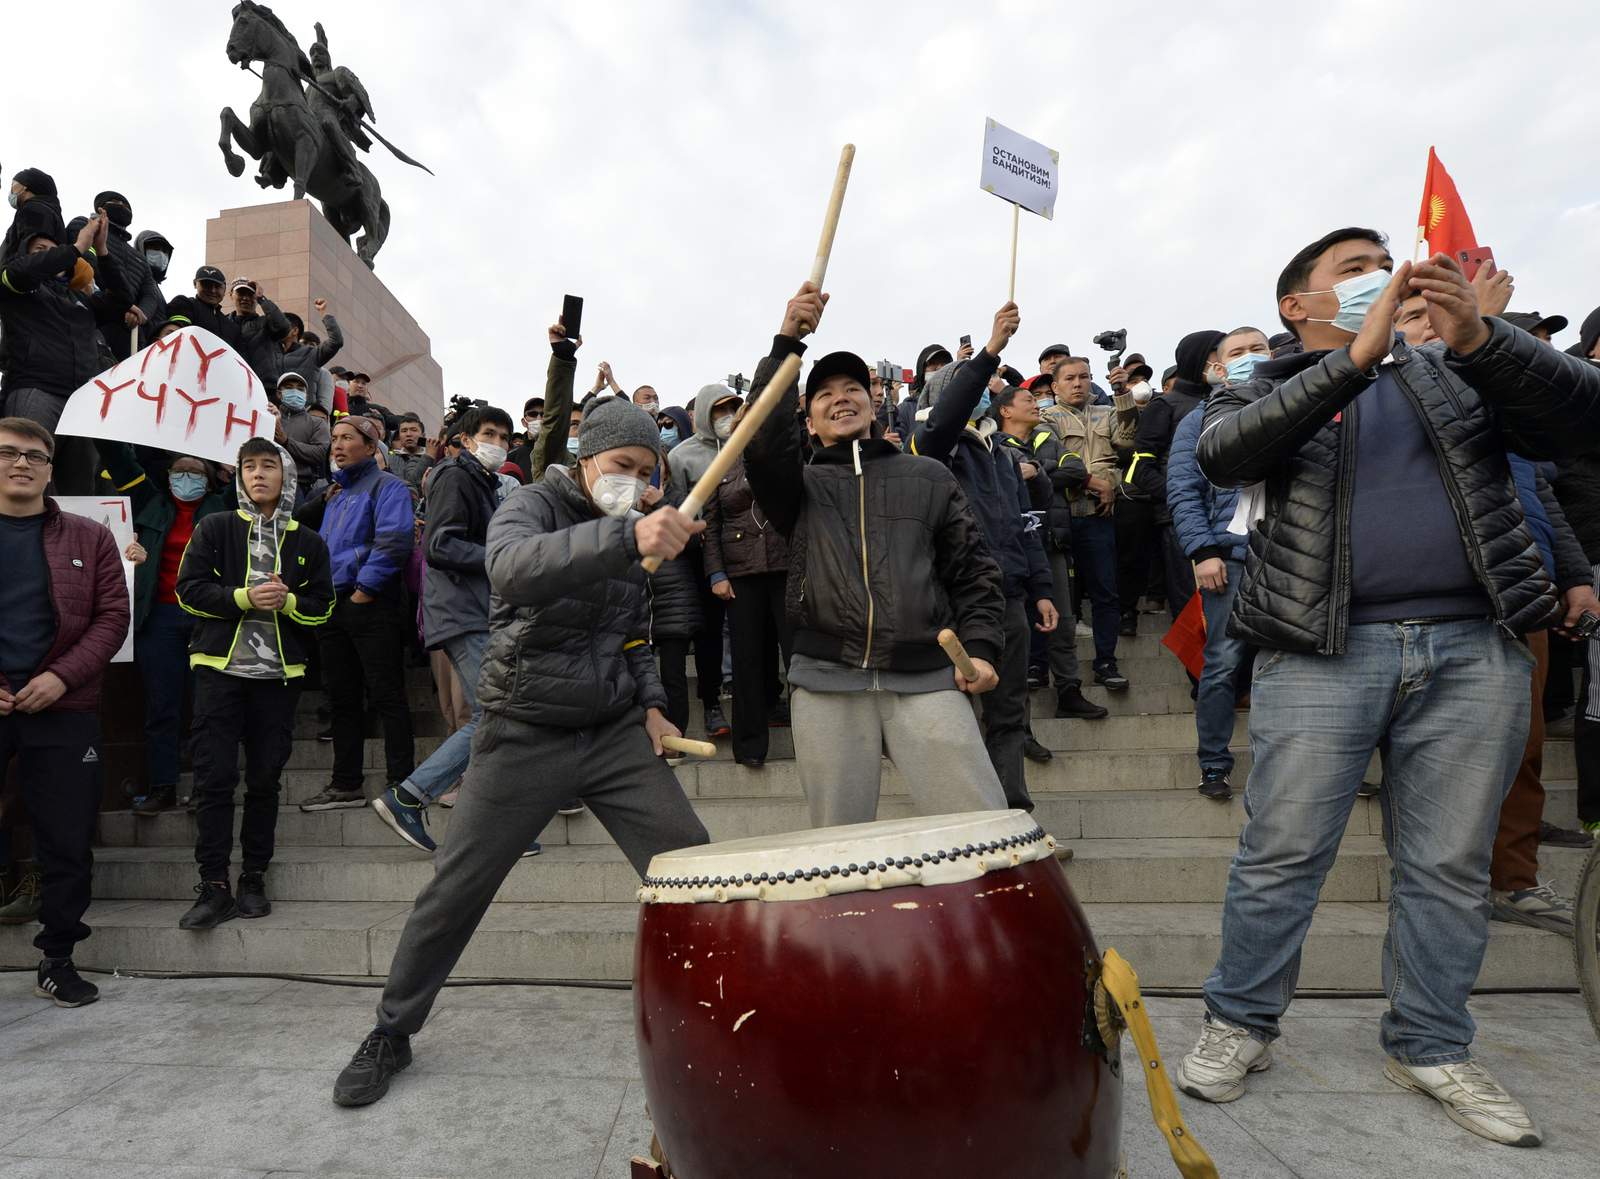 Kyrgyzstan bans rallies, imposes curfew to end turmoil